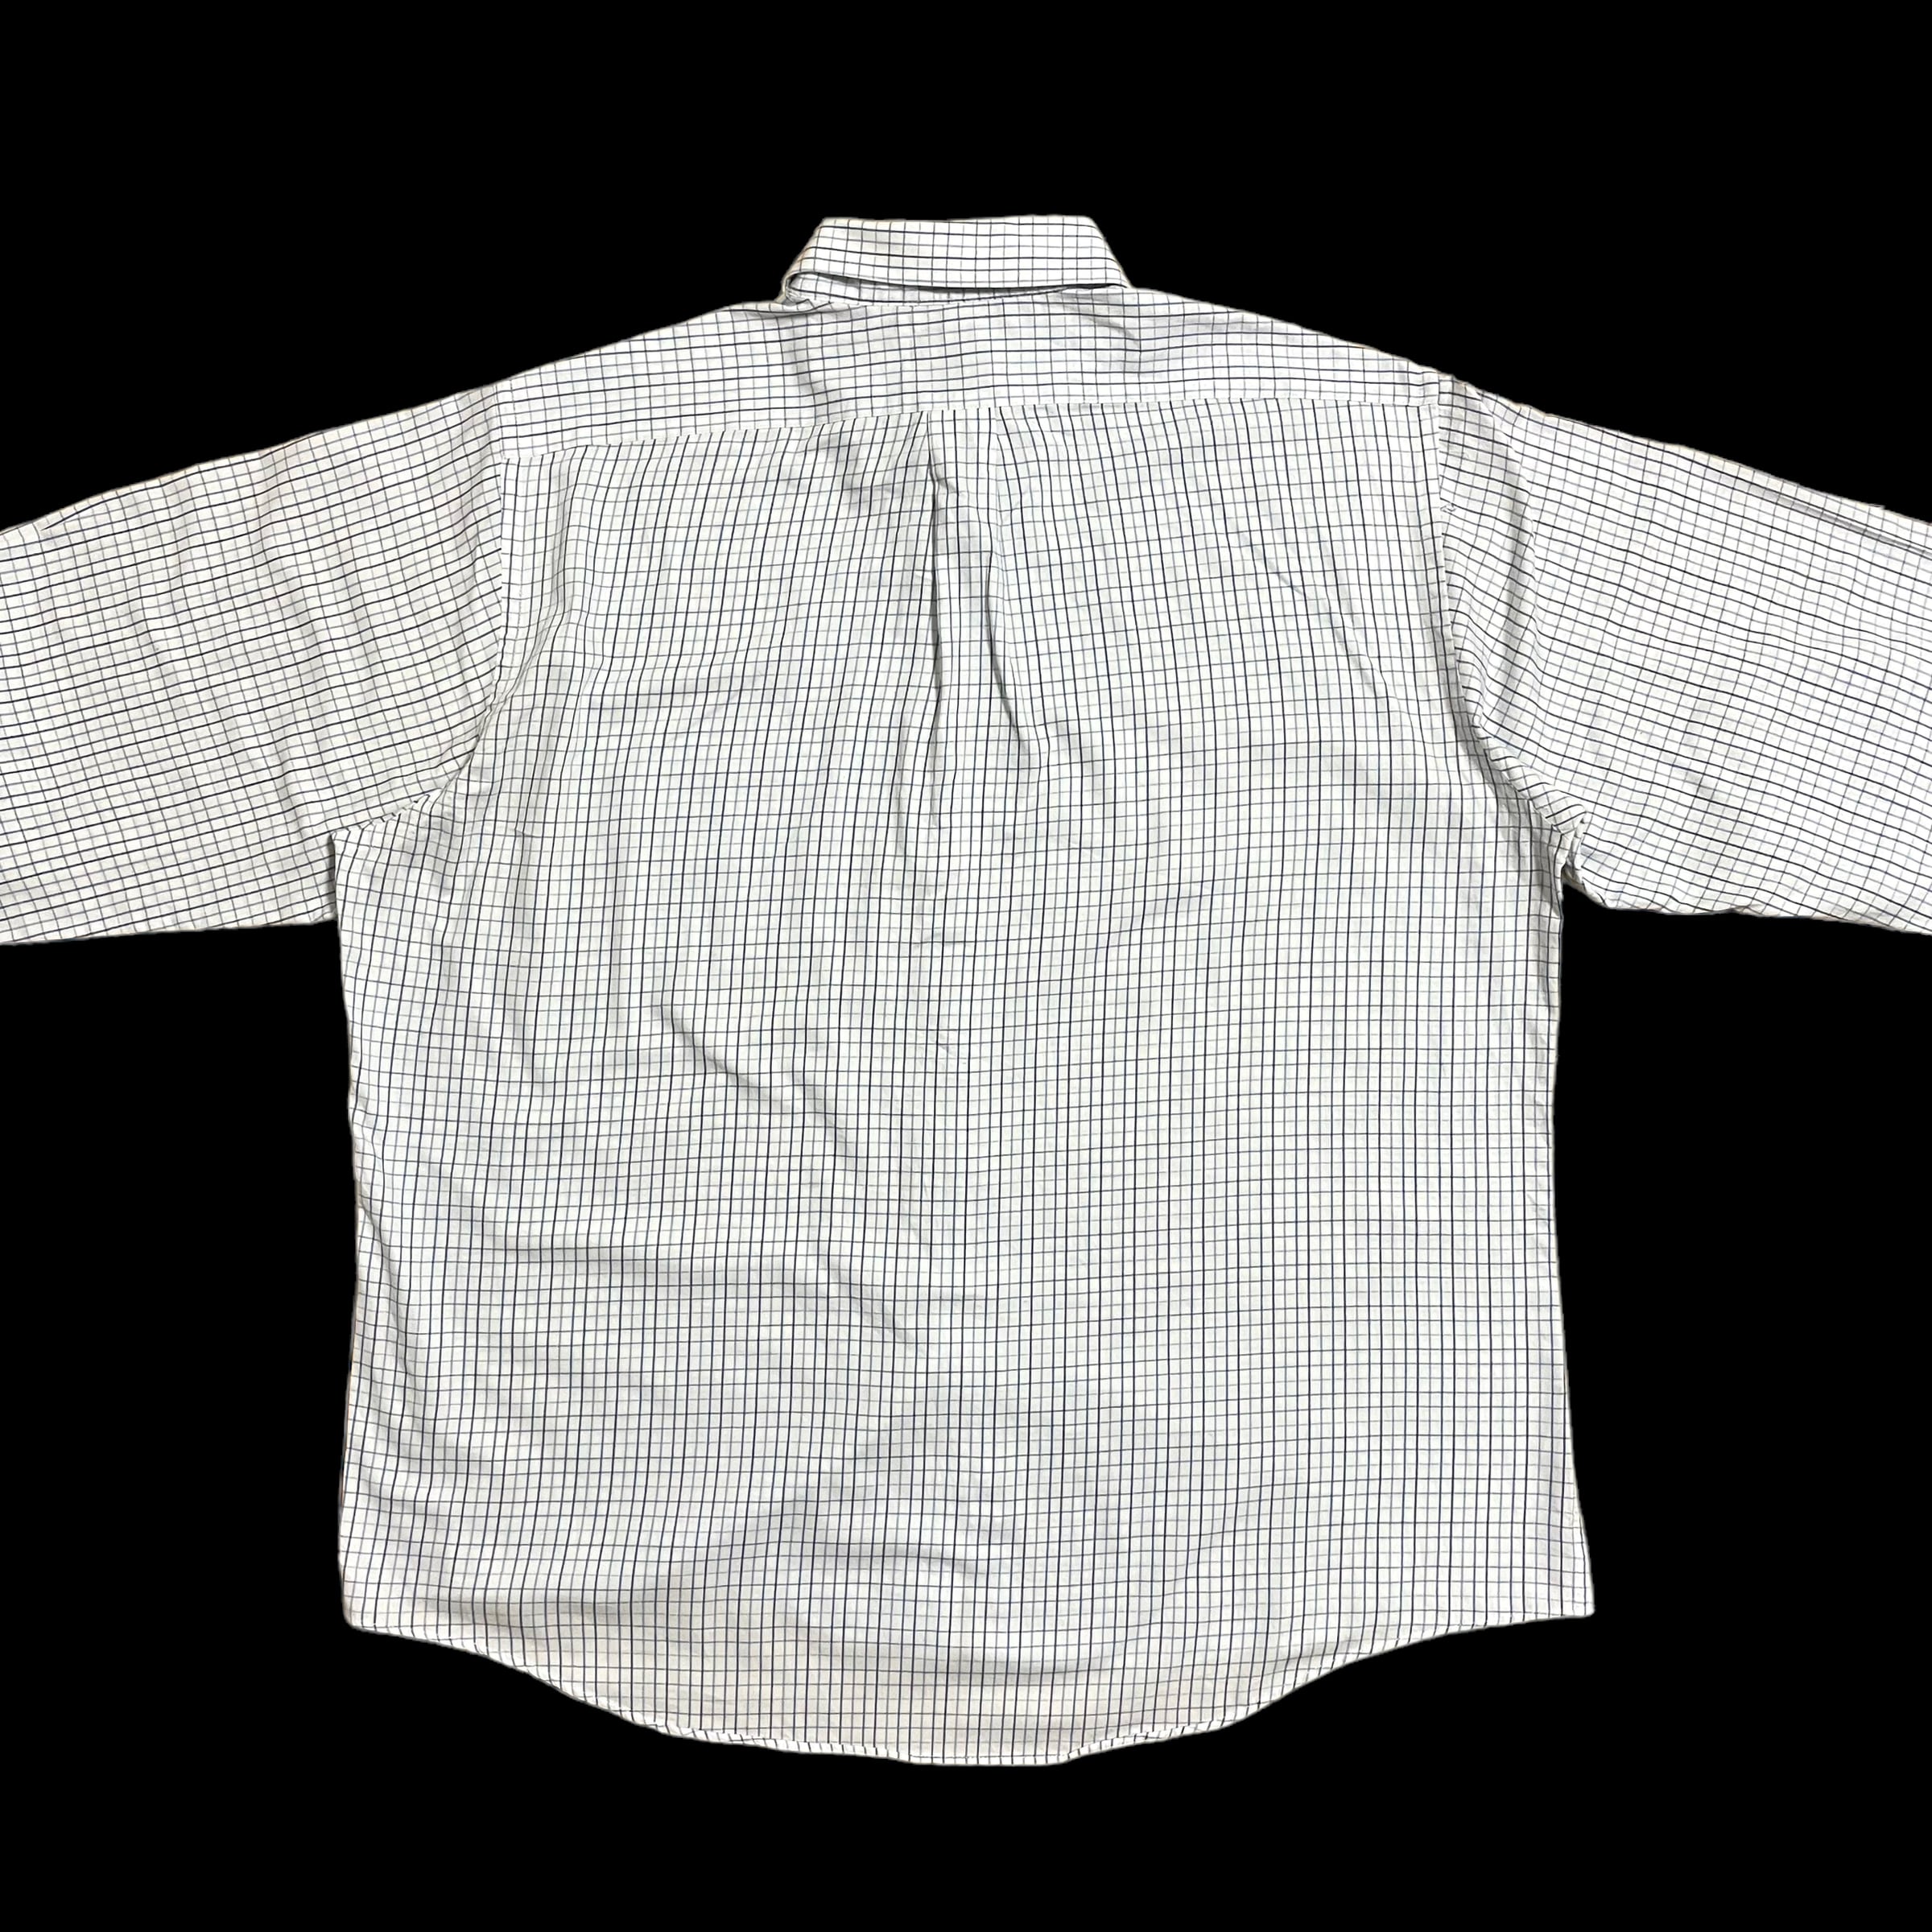 CHAPS】X-LARGE ビッグサイズ 格子柄 長袖シャツ カジュアルシャツ 